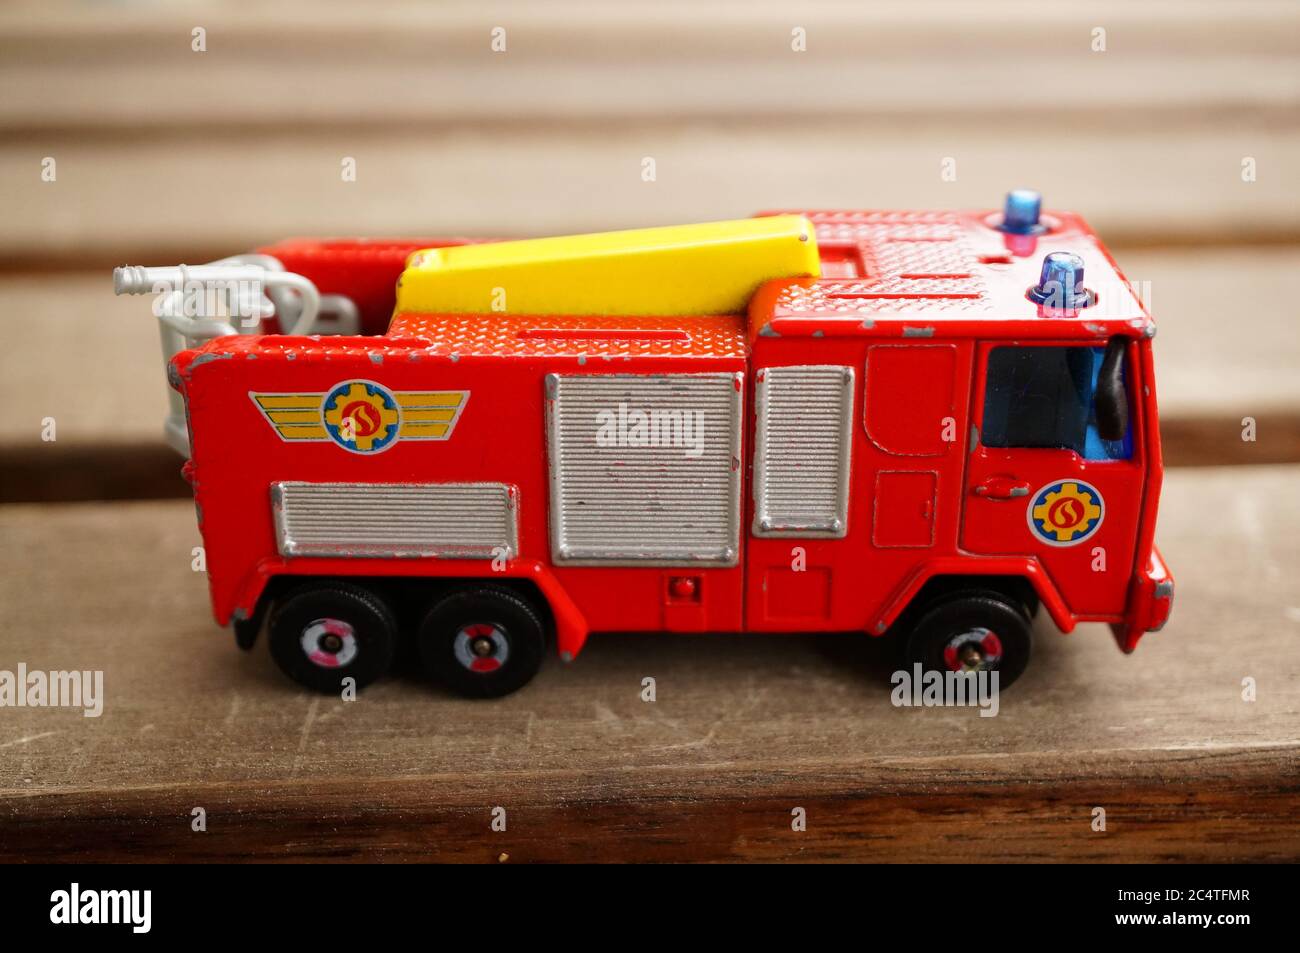 POZNAN, POLONIA - 2020: Bombero Sam juguete Júpiter camión de bomberos en una superficie de madera. Vista horizontal de gran ángulo Fotografía de stock Alamy